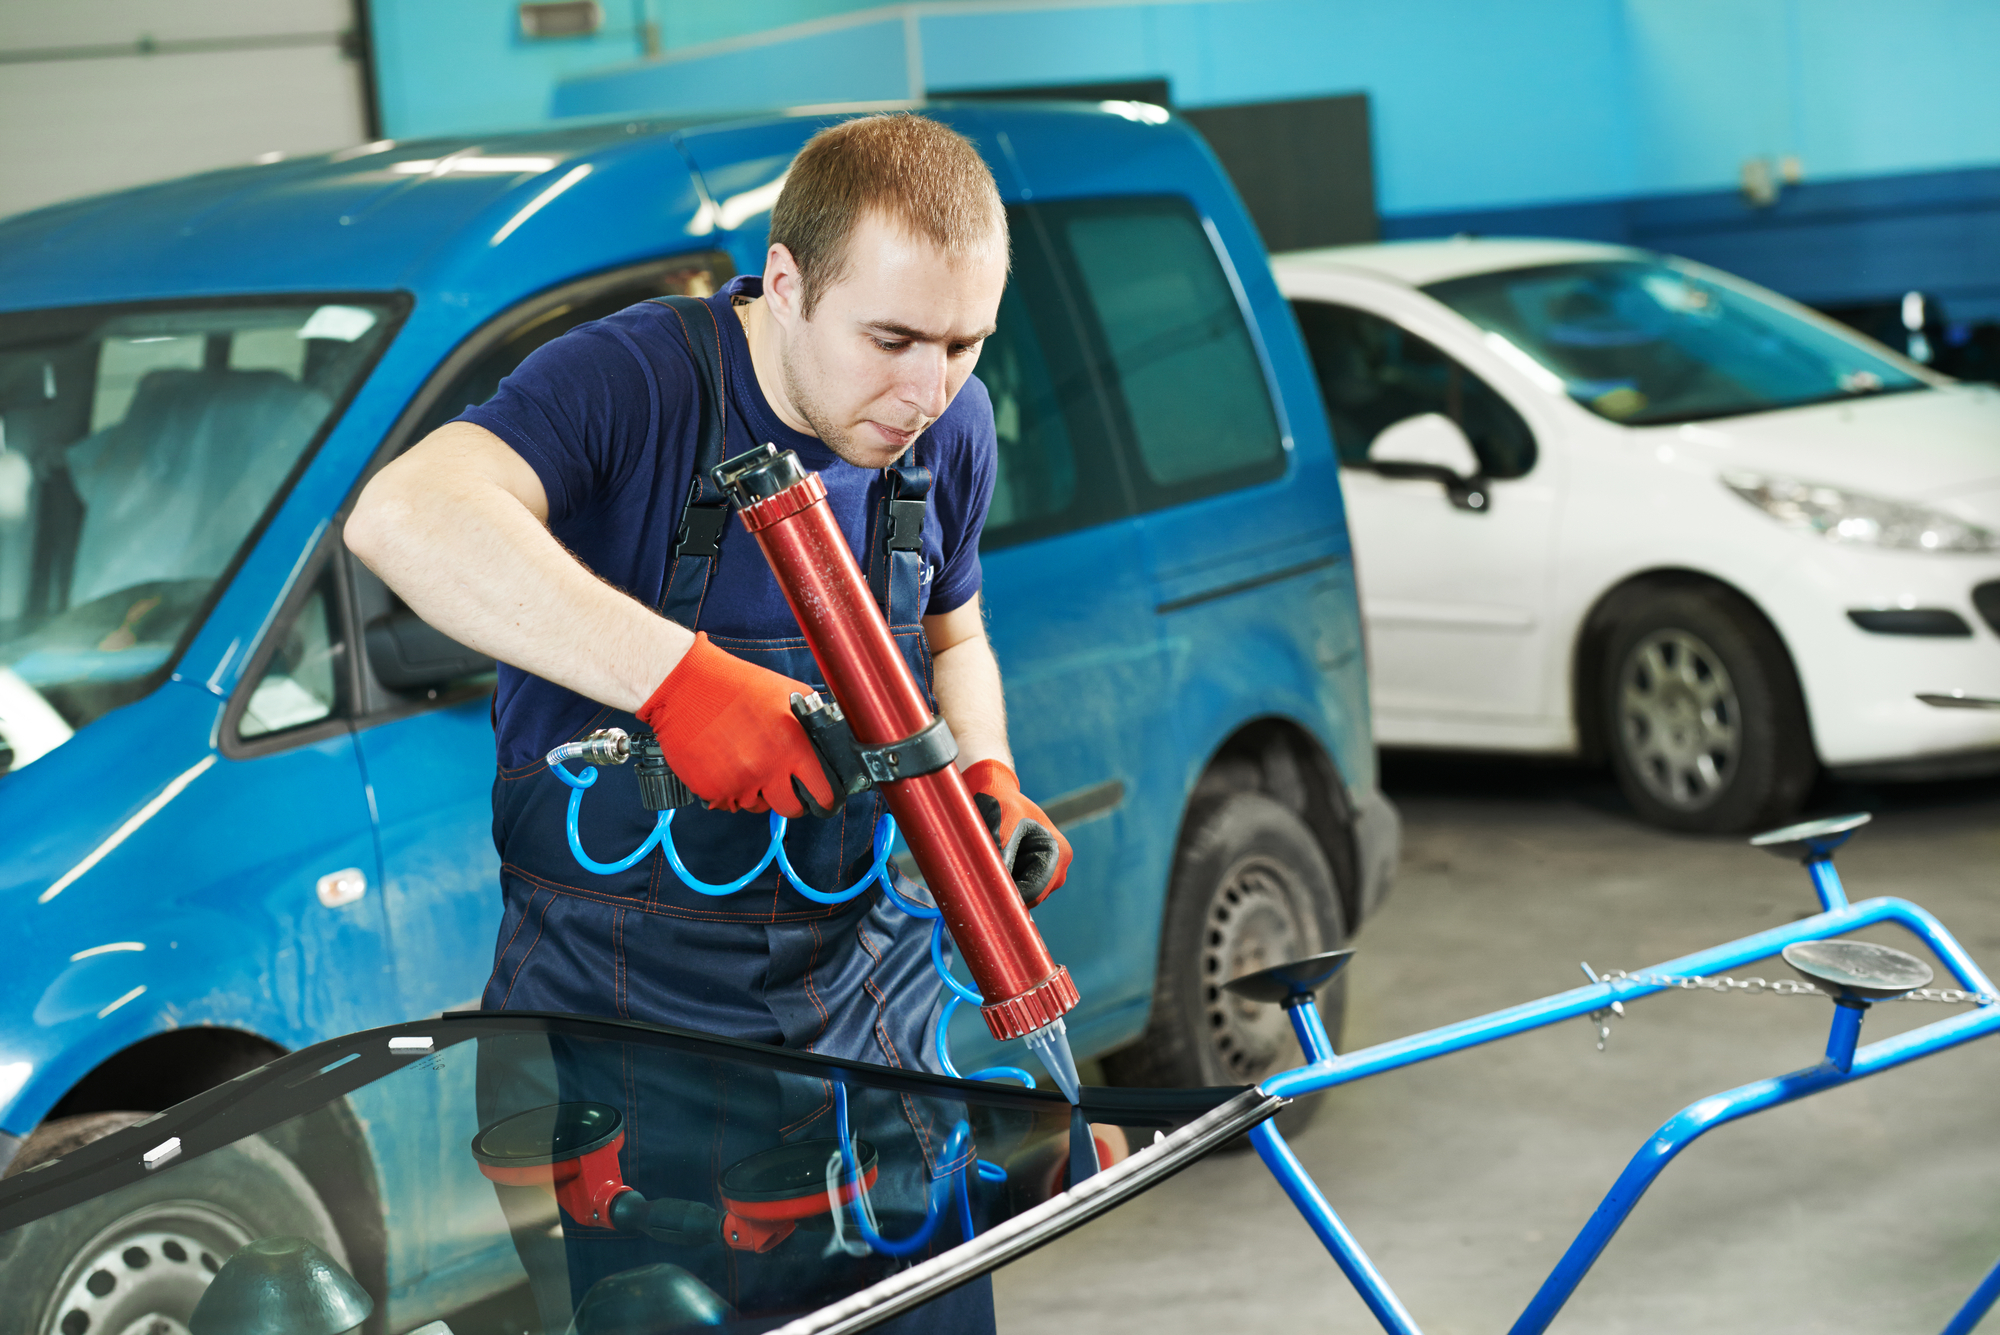 Car glazier applying new glue on a windshield in shop